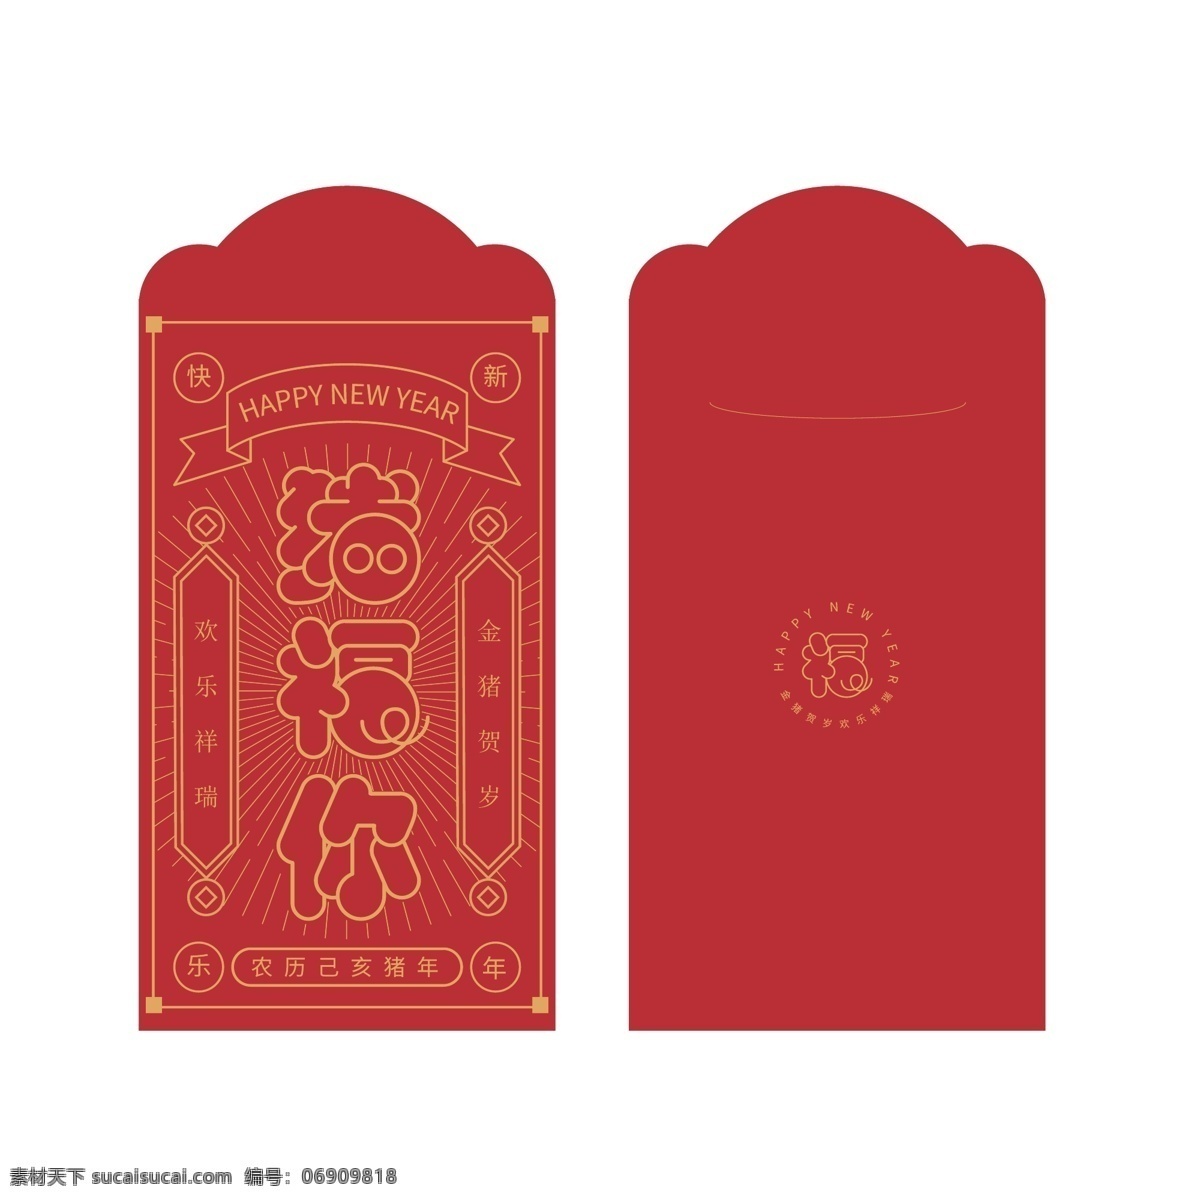 红包设计 红包 人情 份子 节日 春节 过年 来往 祝福你 包装设计